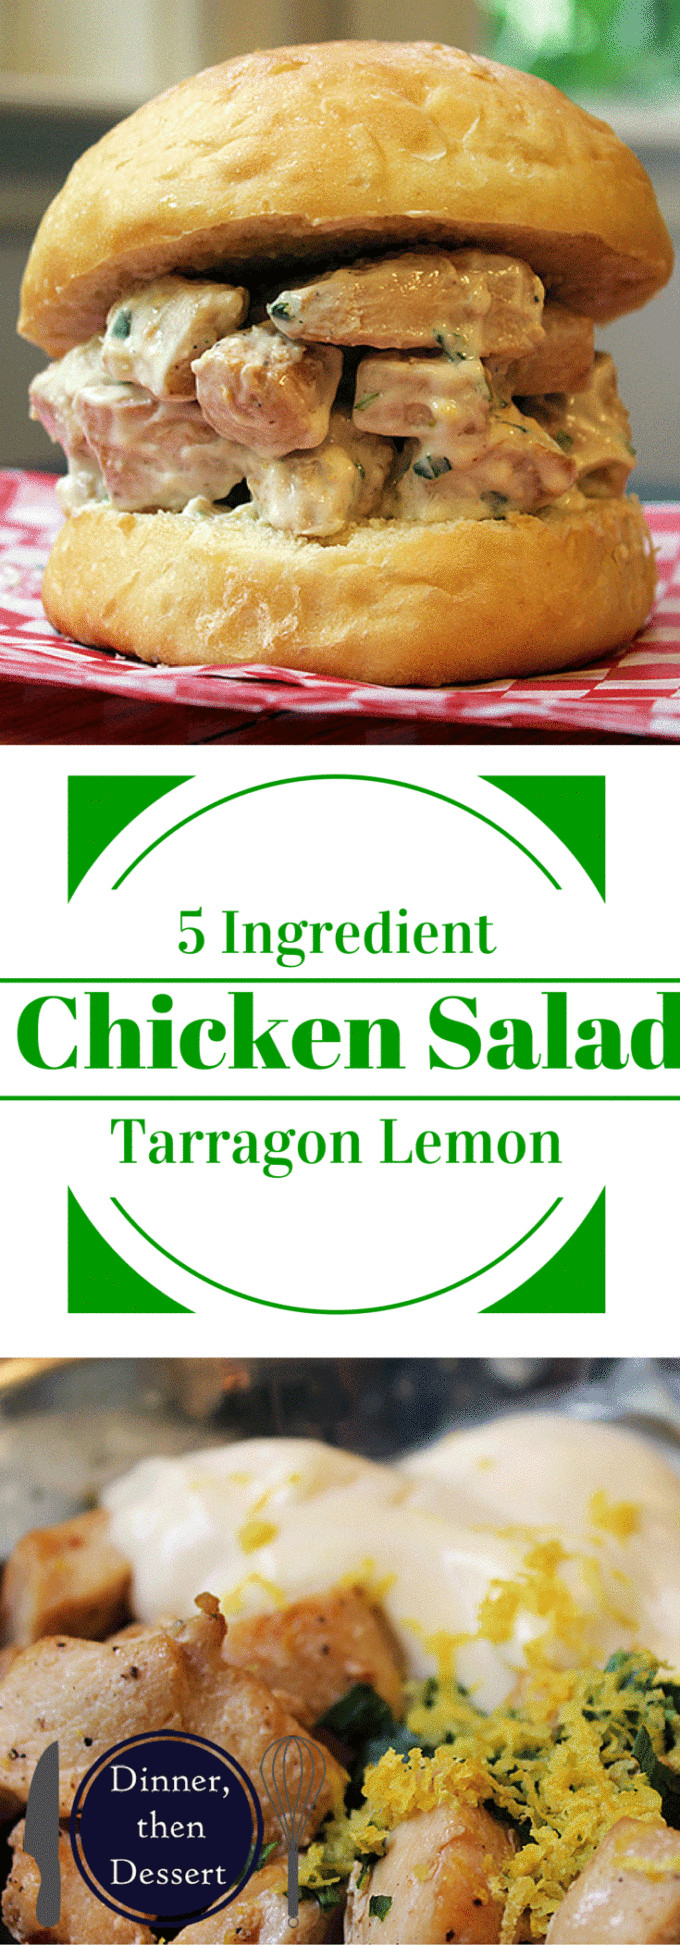 Dinner Then Dessert
 5 Ingre nt Tarragon Lemon Chicken Salad Sandwiches